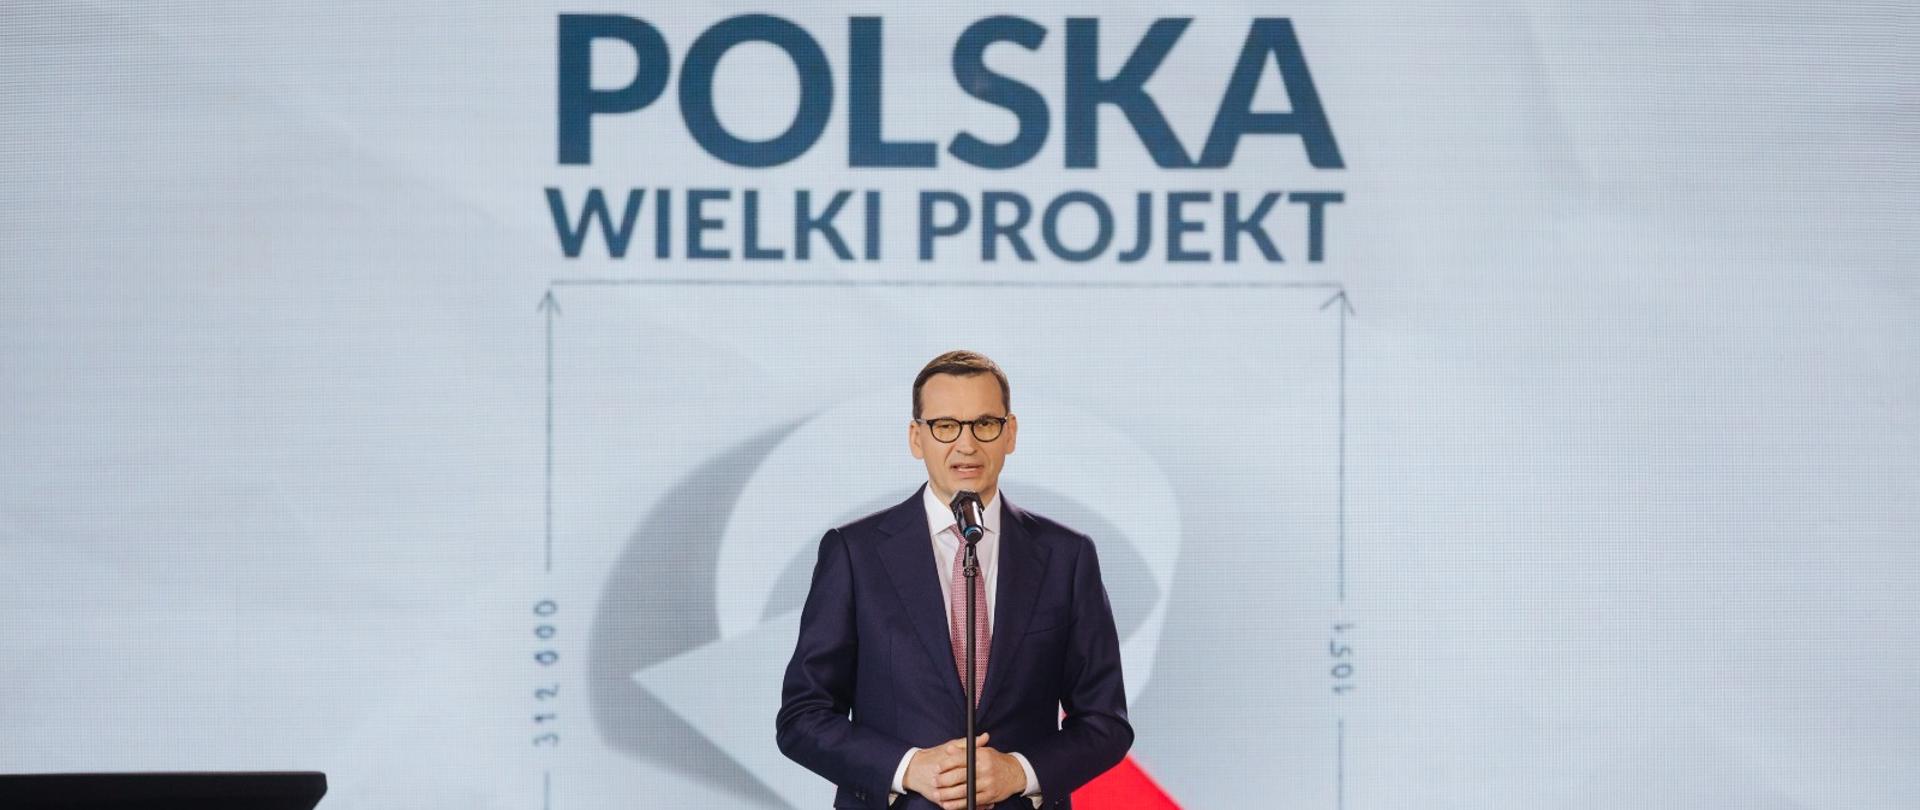 Premier Mateusz Morawiecki podczas kongresu Polska Wielki Projekt.